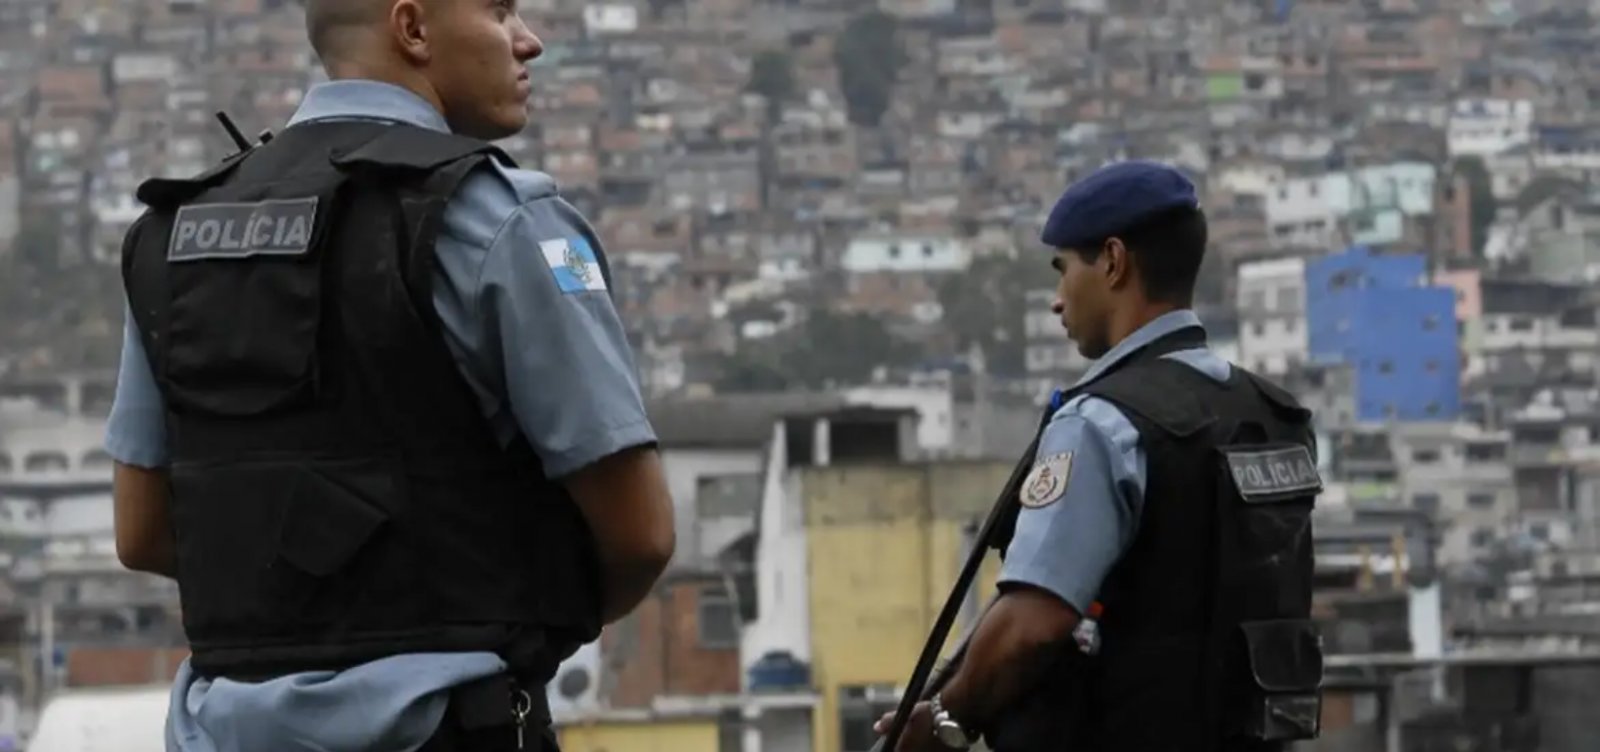 Brasil fica atrás de países do G20 em segurança pública, aponta estudo da Firjan